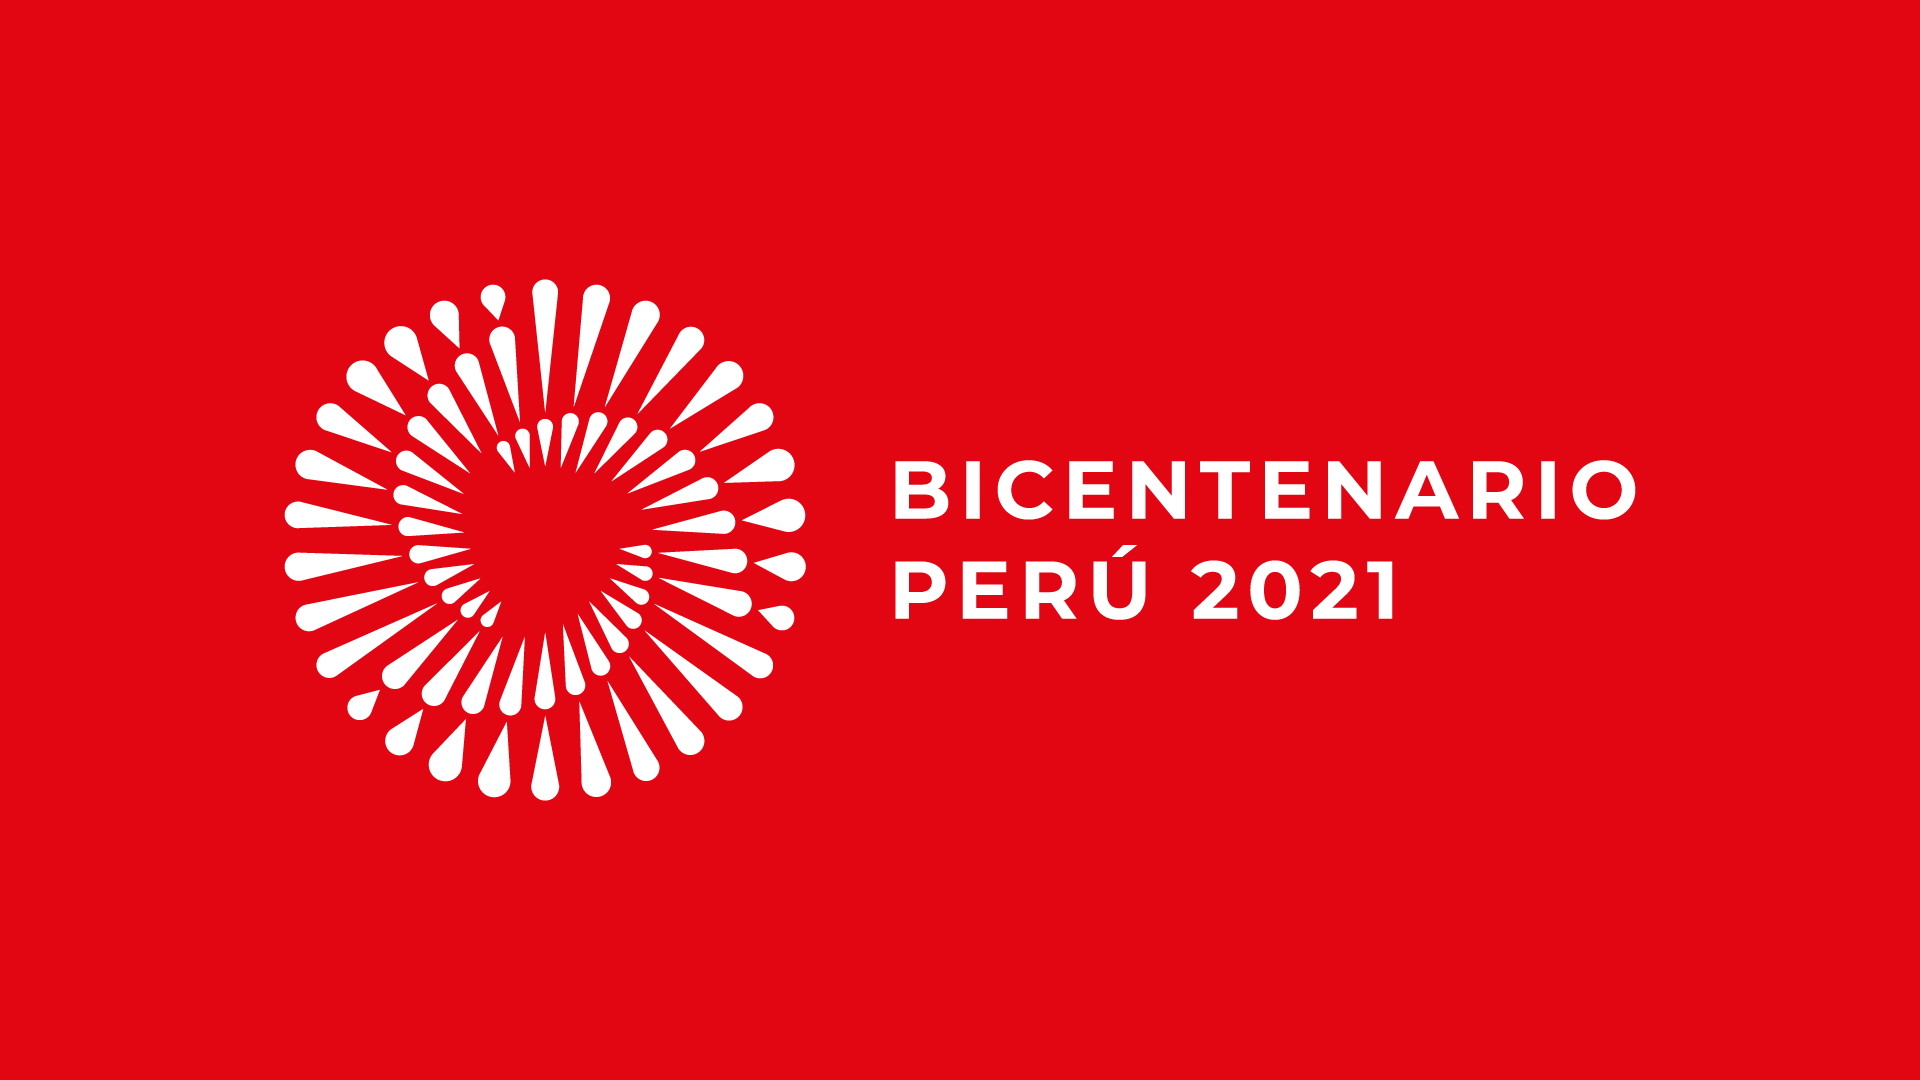 Bicentenario del Perú 2021